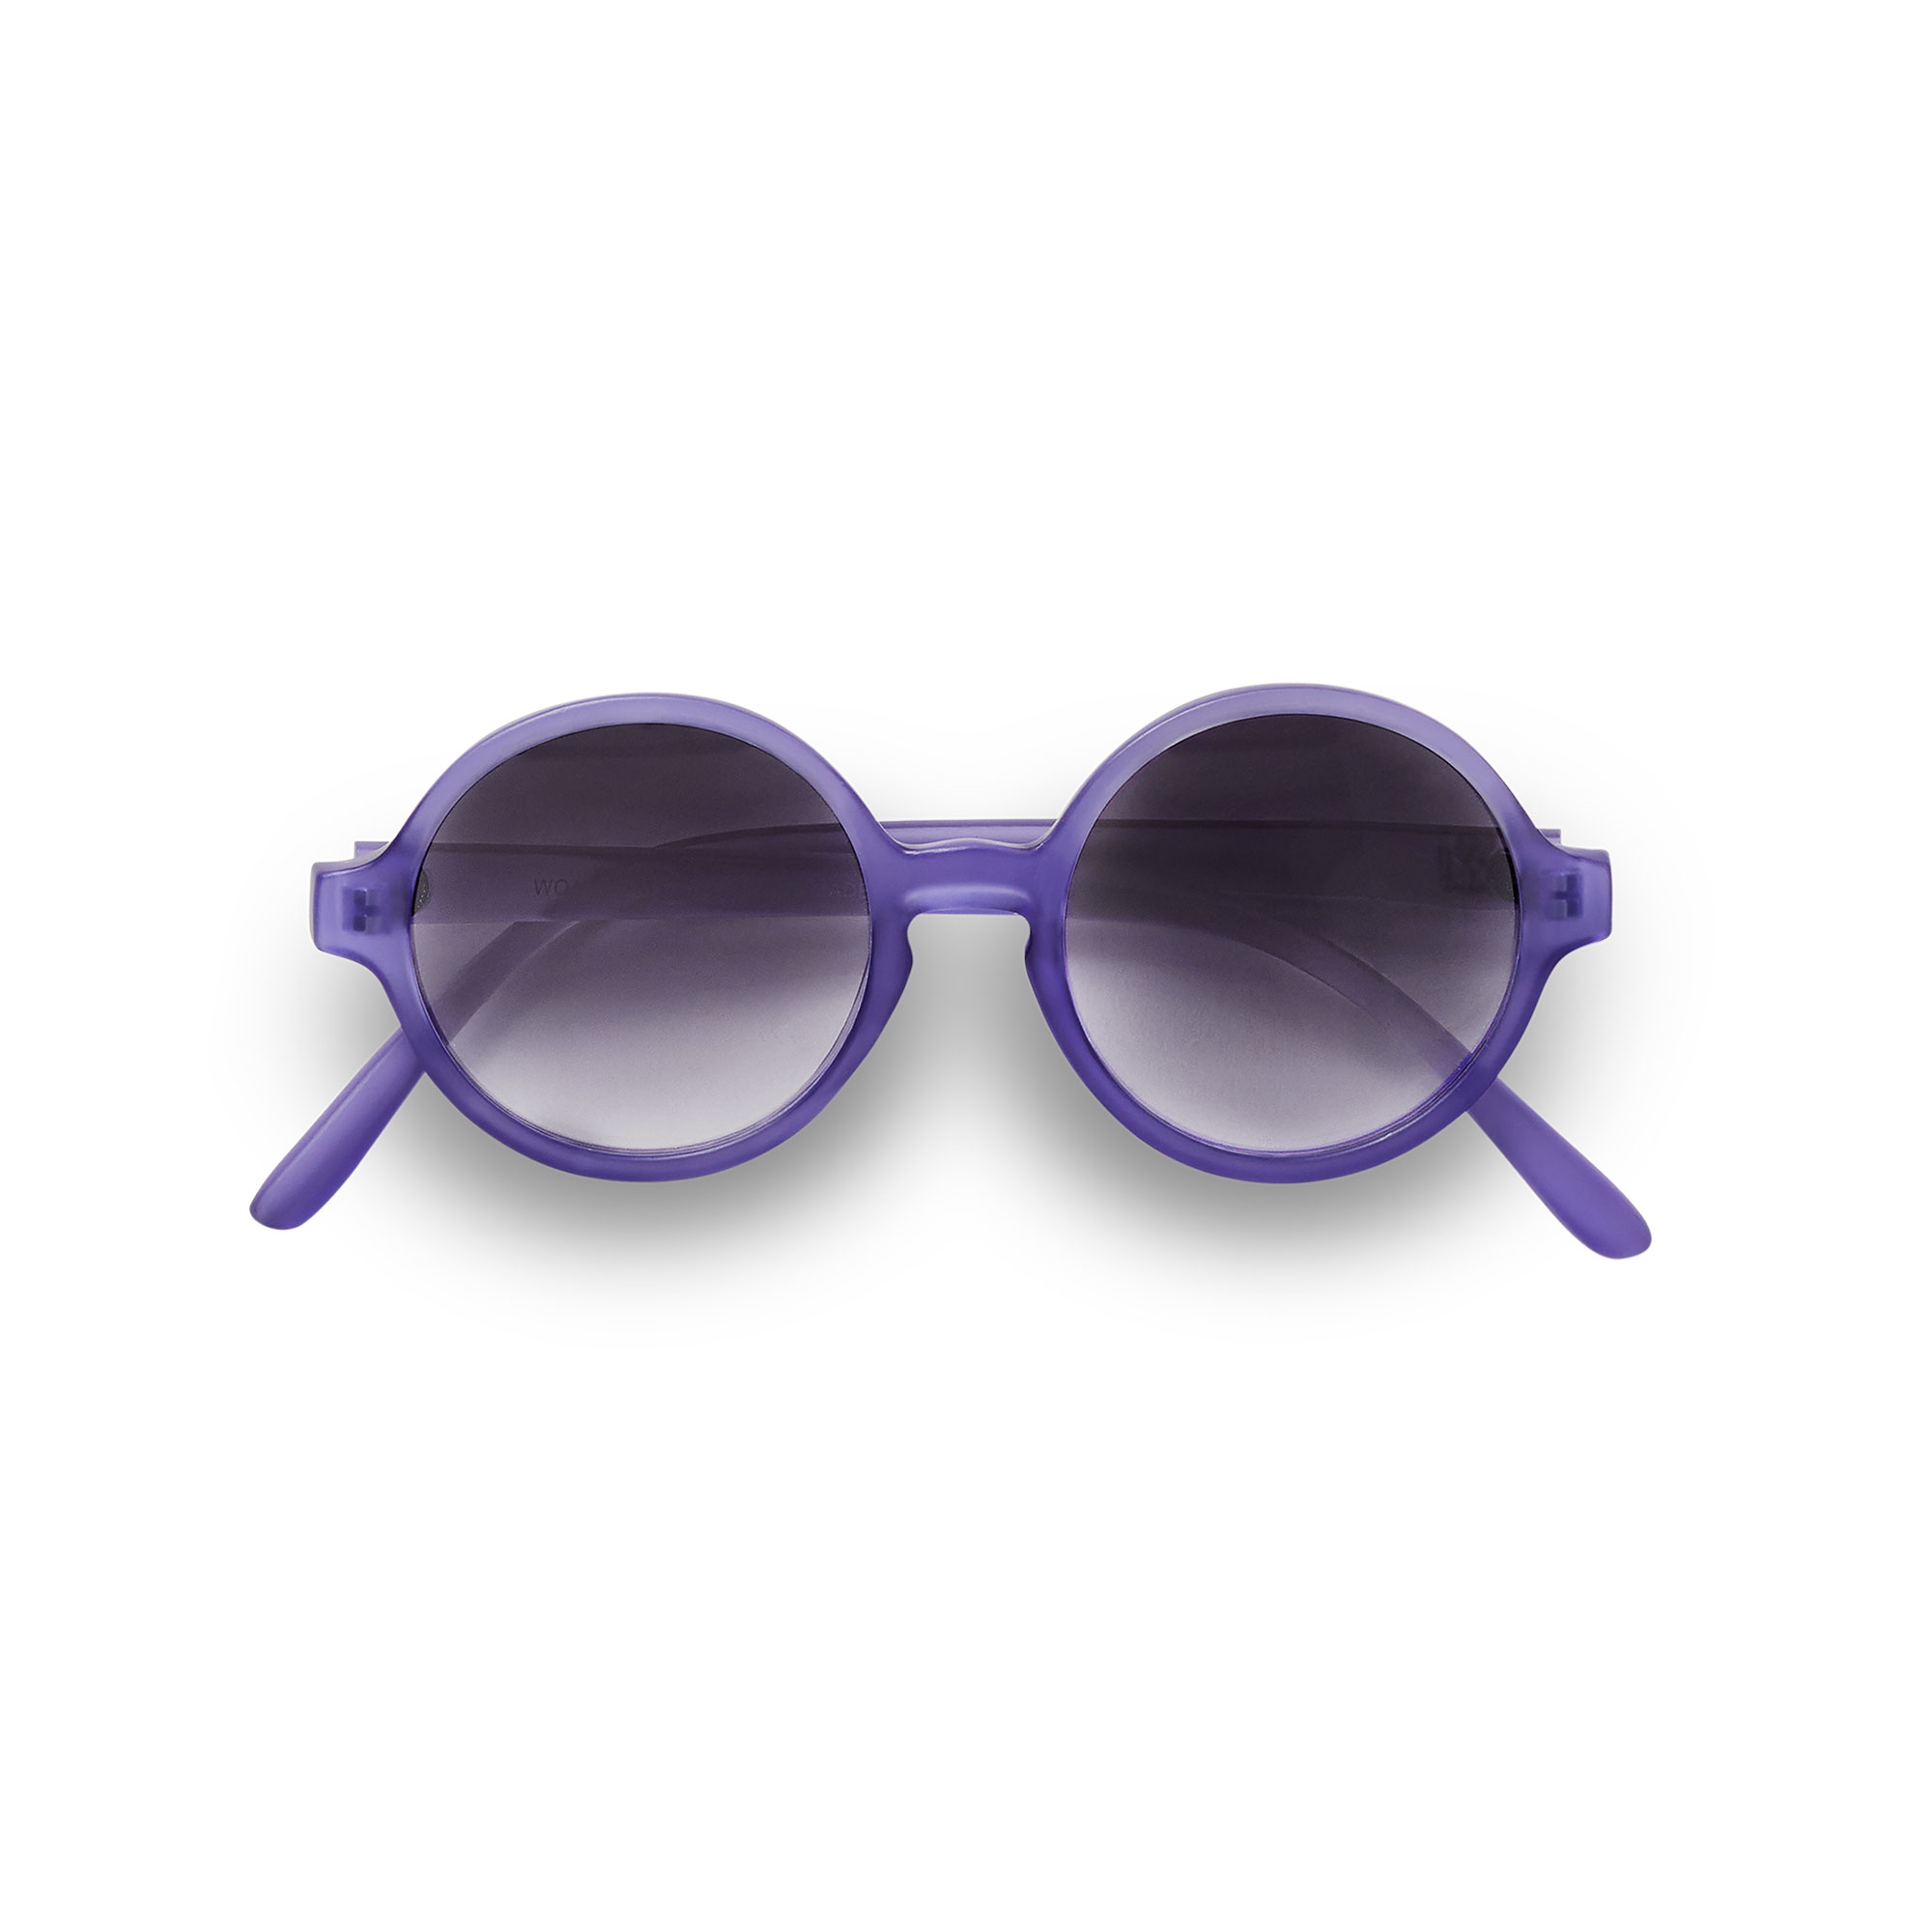 KIETLA WOAM slnečné okuliare 2-4 roky- purple